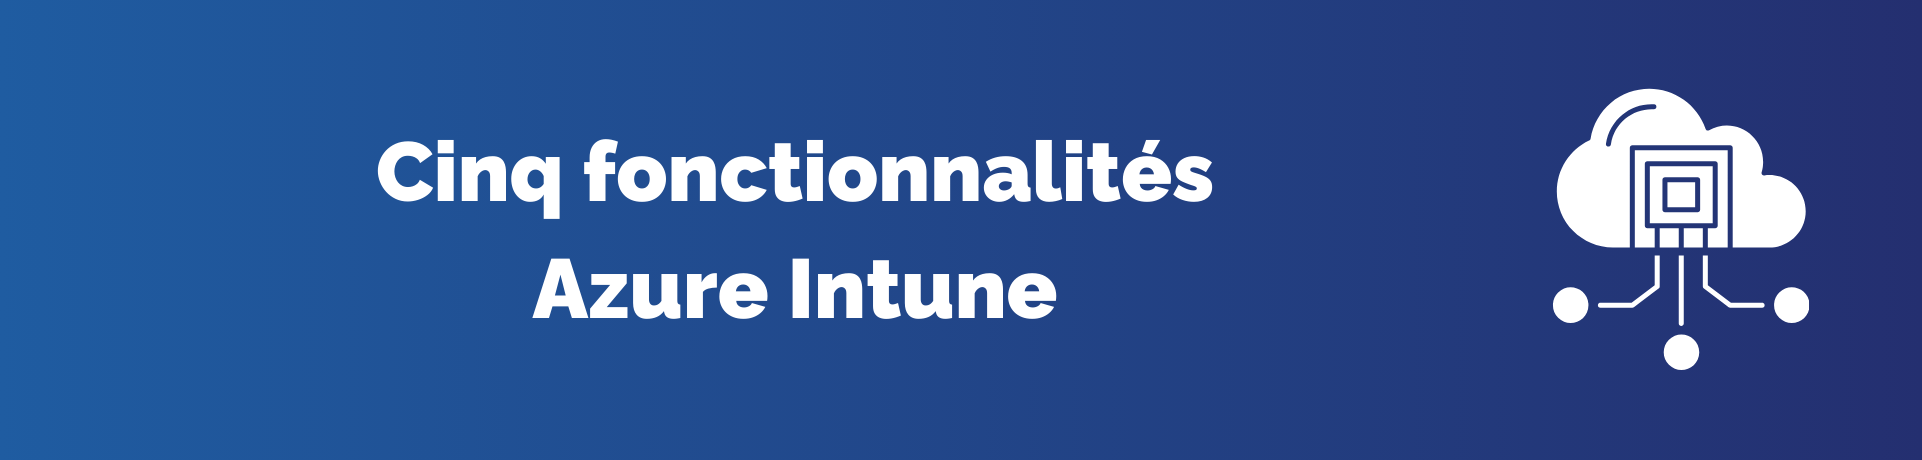 Azure Intune : Améliorer l'administration des points de terminaison avec cinq fonctionnalités clés Image